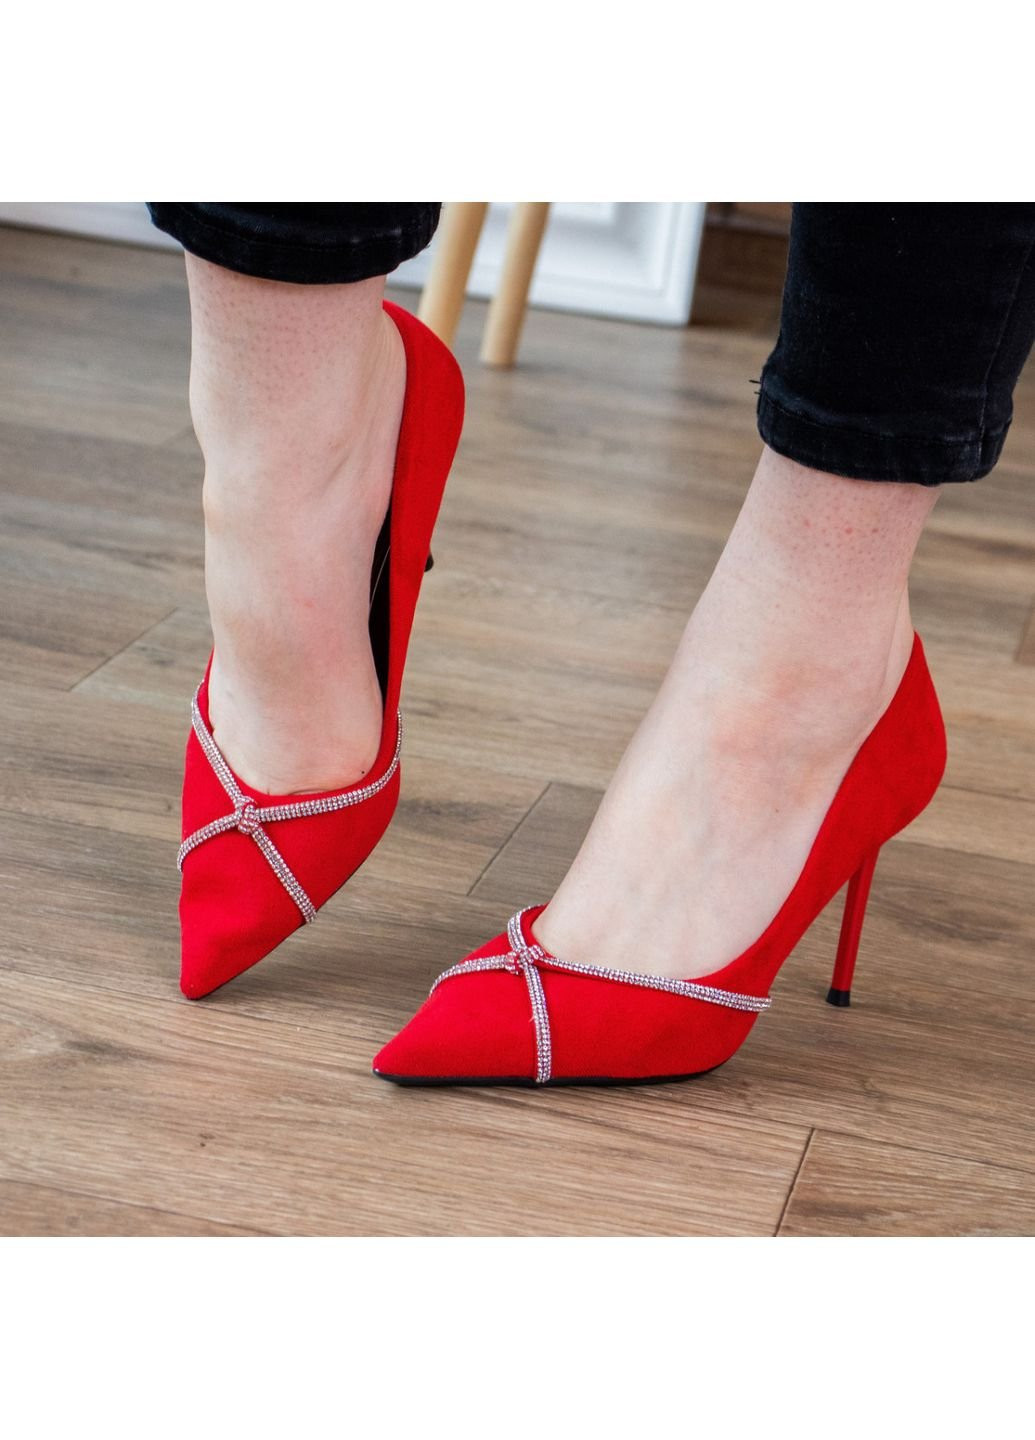 Туфли женские Cabaret 2606 38 24,5 см Красный Fashion